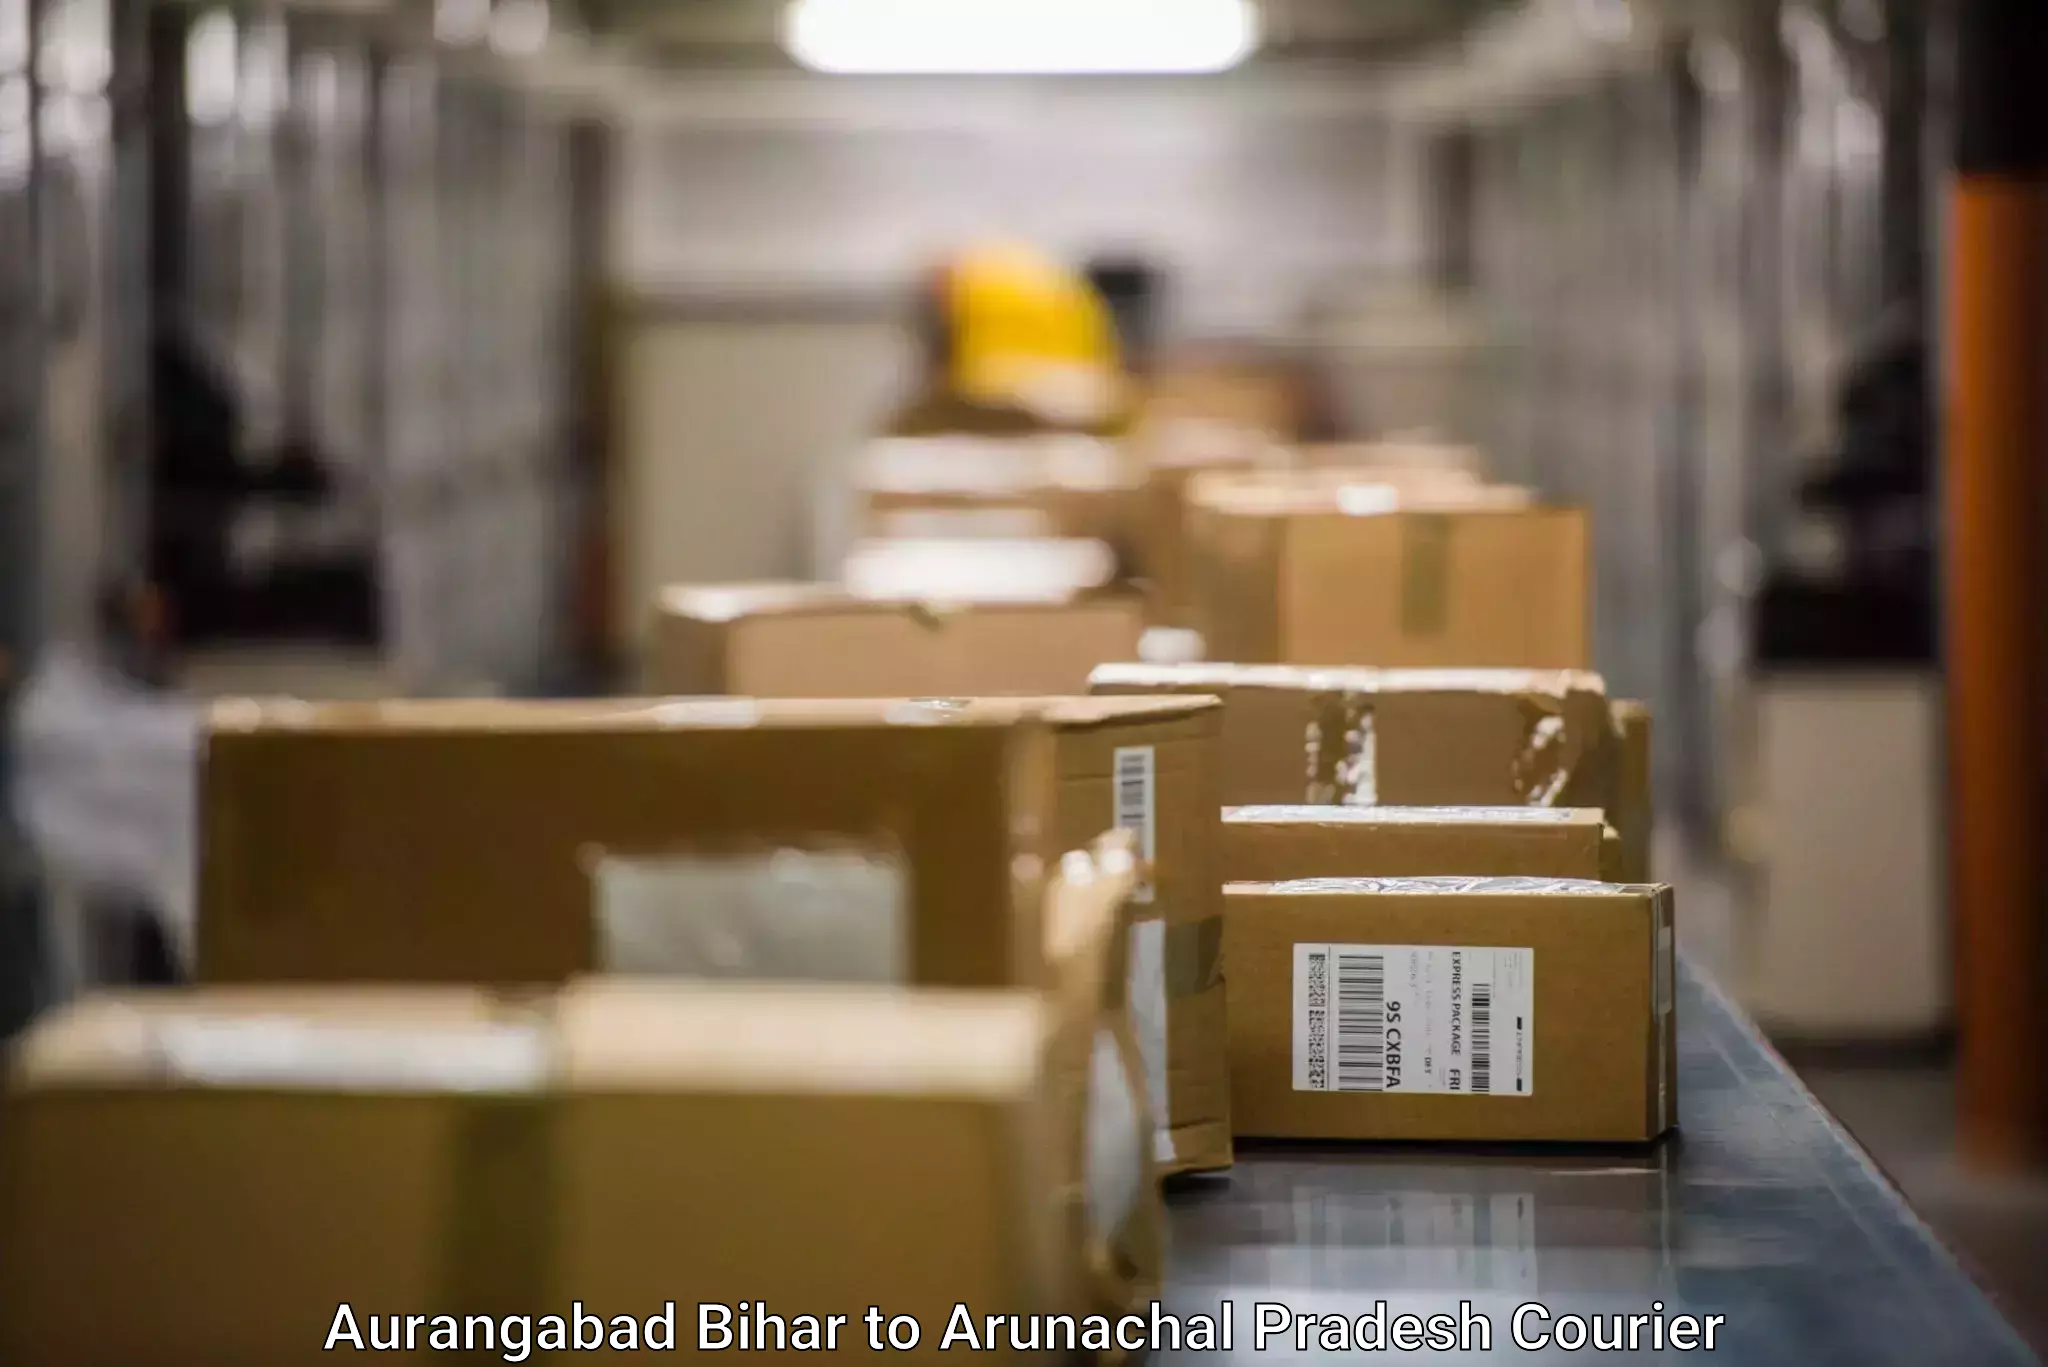 Local courier options Aurangabad Bihar to Arunachal Pradesh